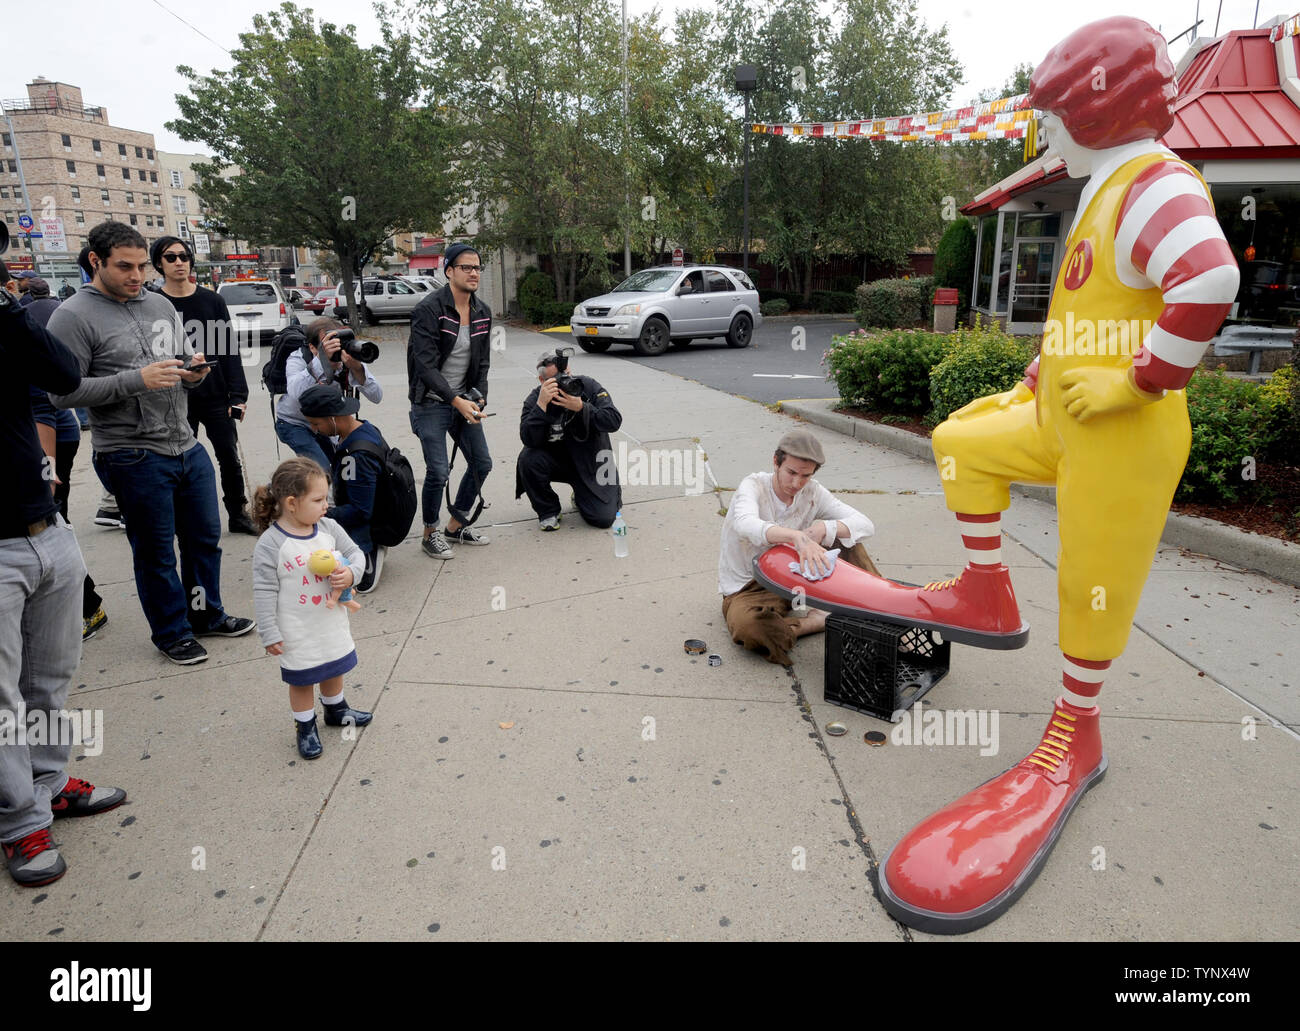 Ein gfk Nachbau des Ronald McDonald seine Schuhe in glänzte durch eine  echte live Junge wird der Bürgersteig außerhalb einer anderen McDonalds  Besuch jeden Mittag für die nächste Woche als ein Werk